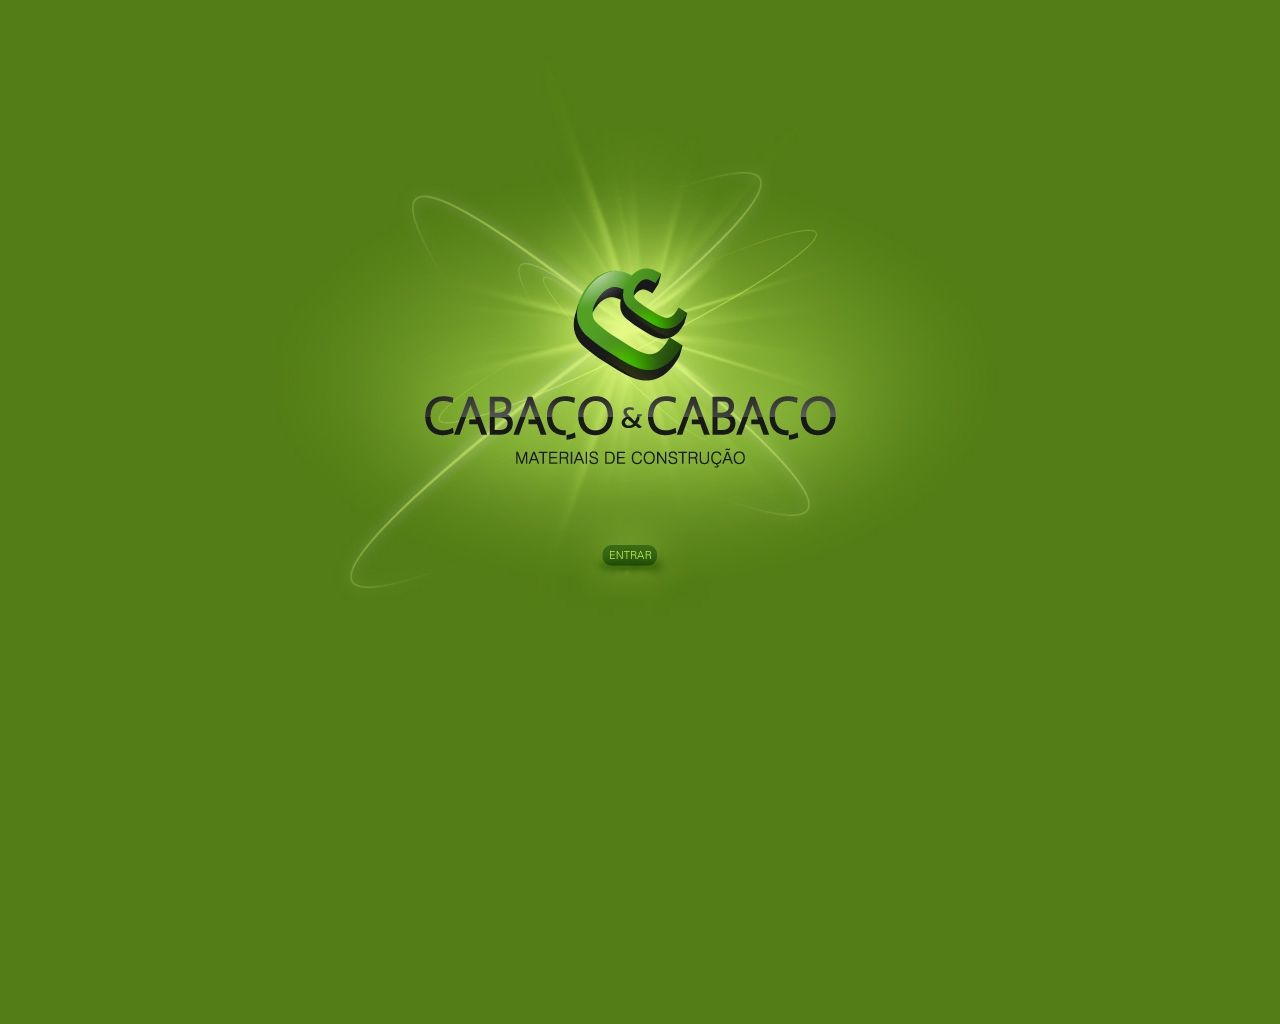 Site de imagem cabacoecabaco.pt em 1280x1024